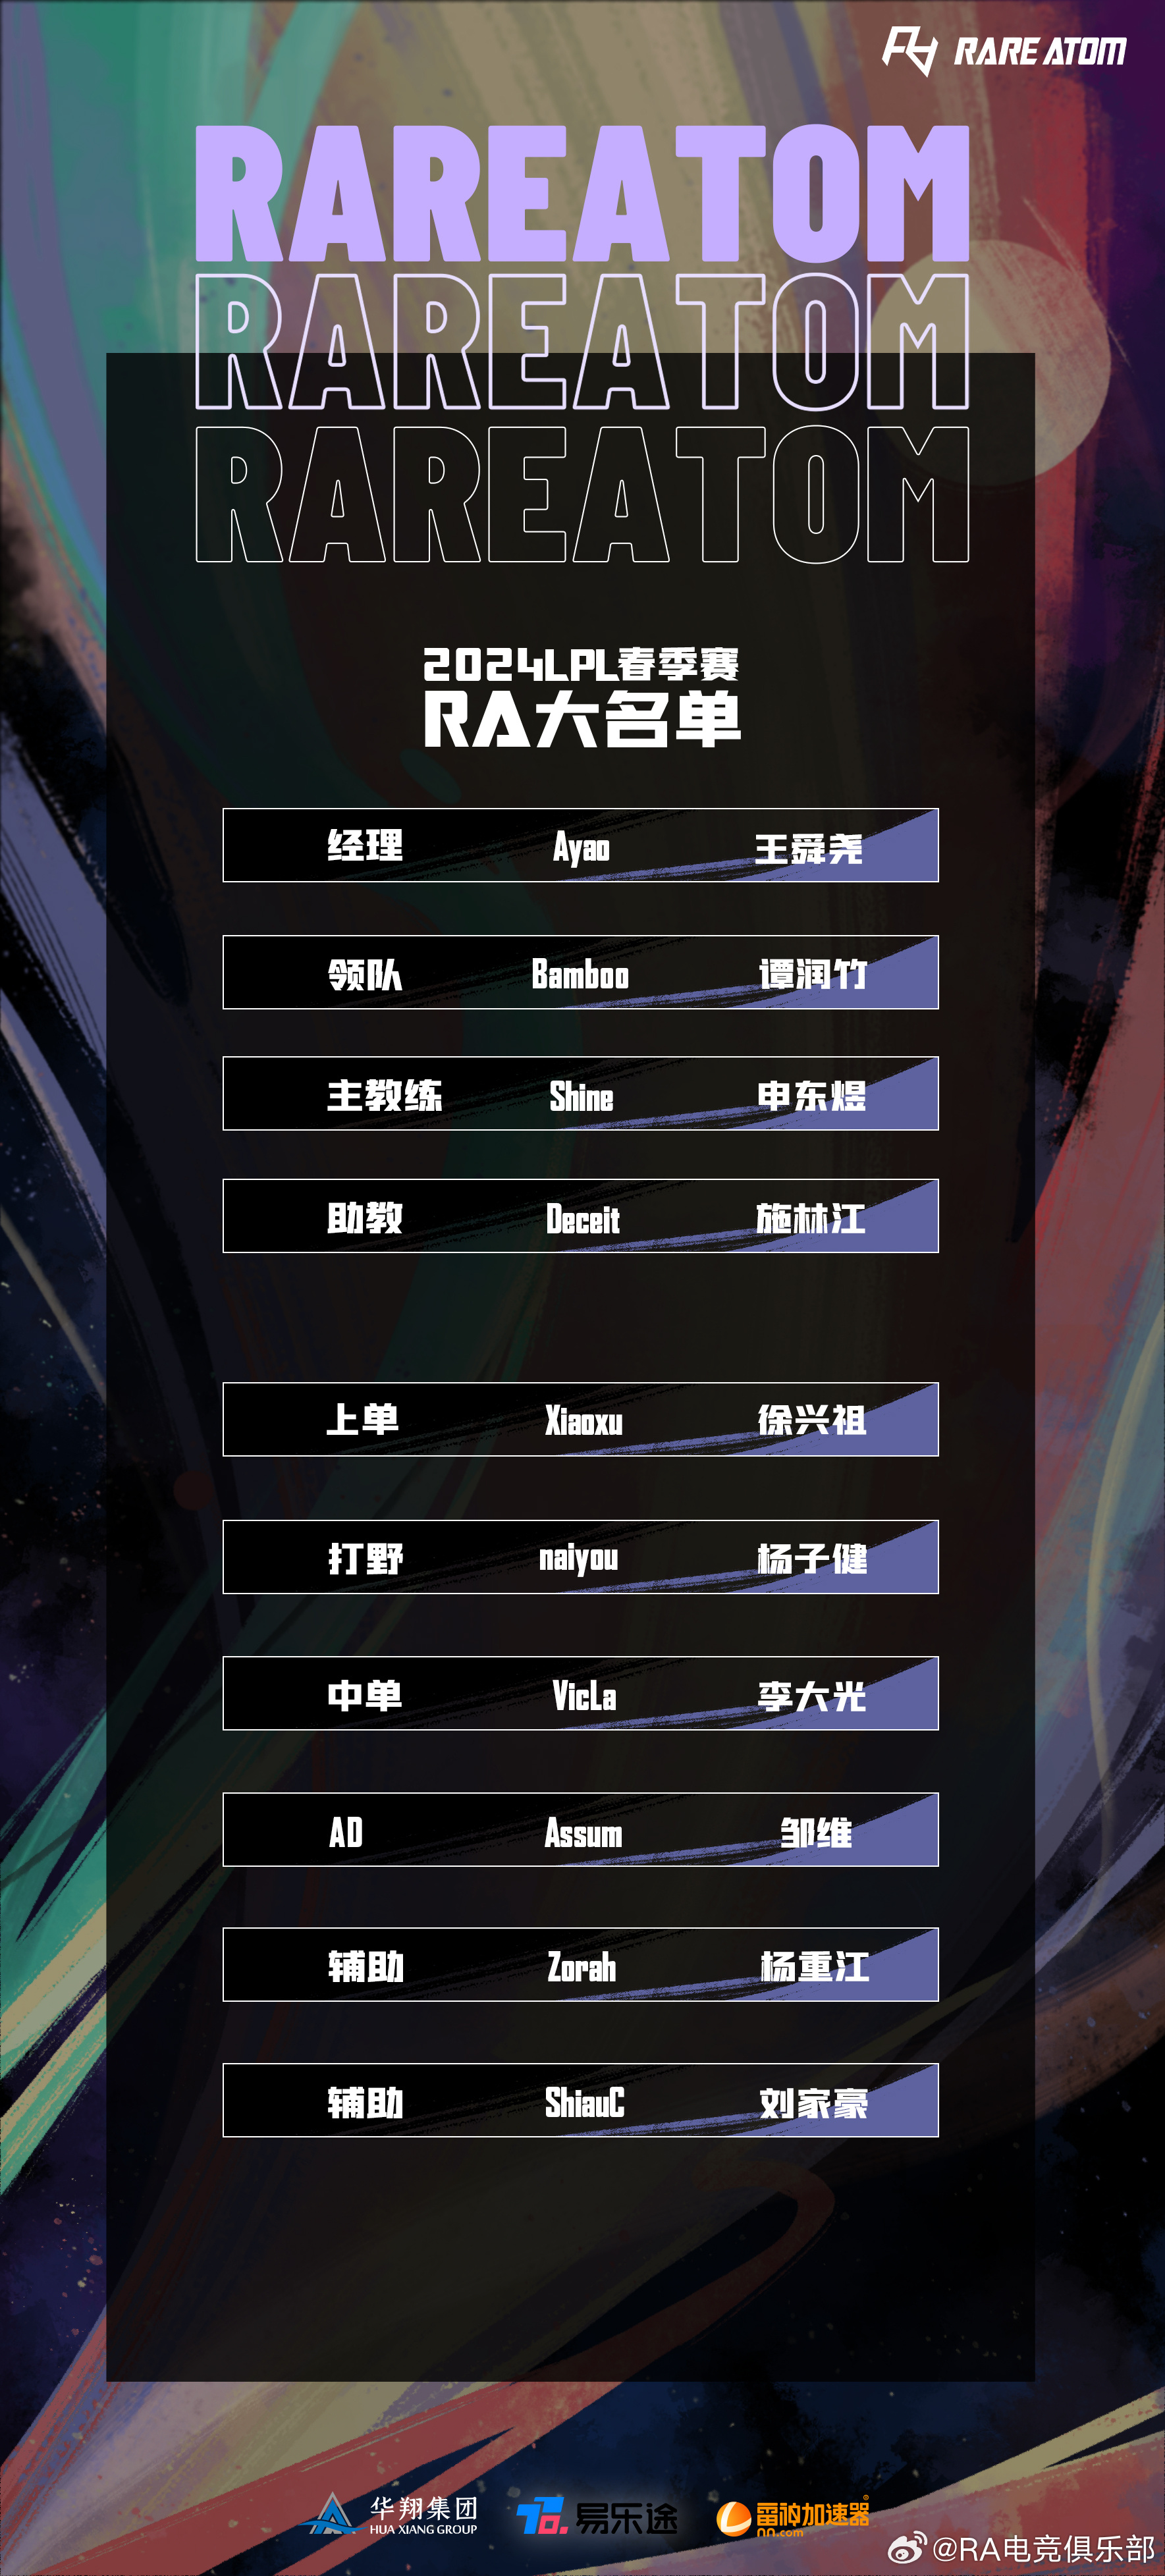 RA官宣新赛季大名单：上单xiaoxu、打野naiyou、辅助ShiauC